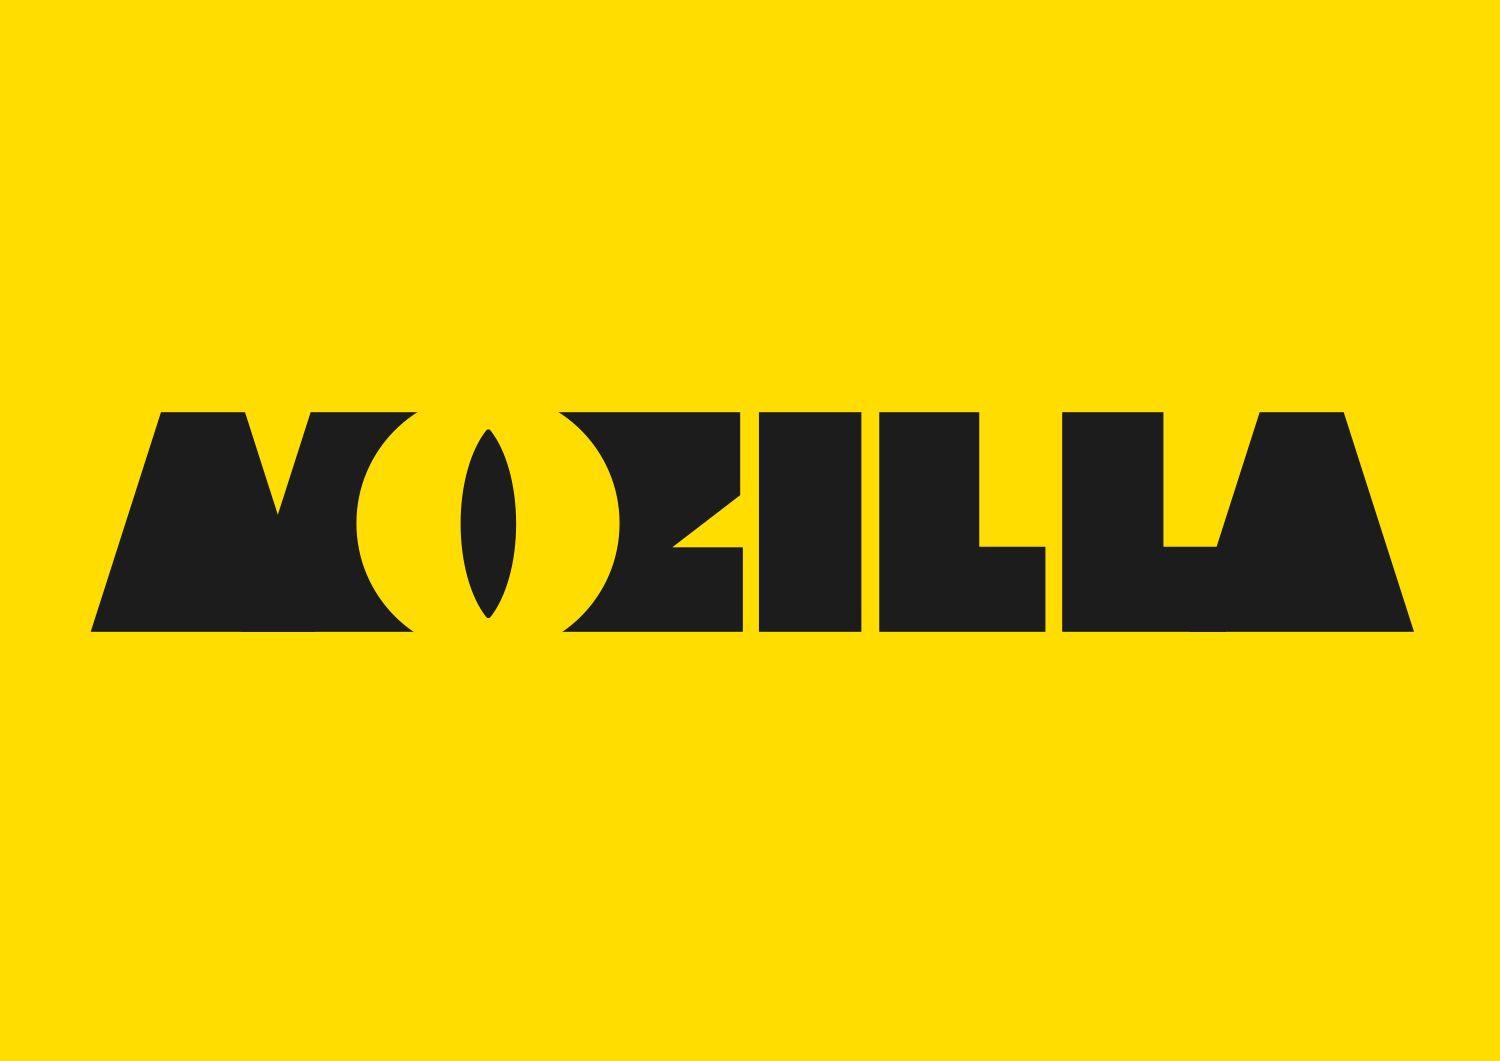 Mozilla Logo - Now for the fun part of Mozilla's logo design. Open Design